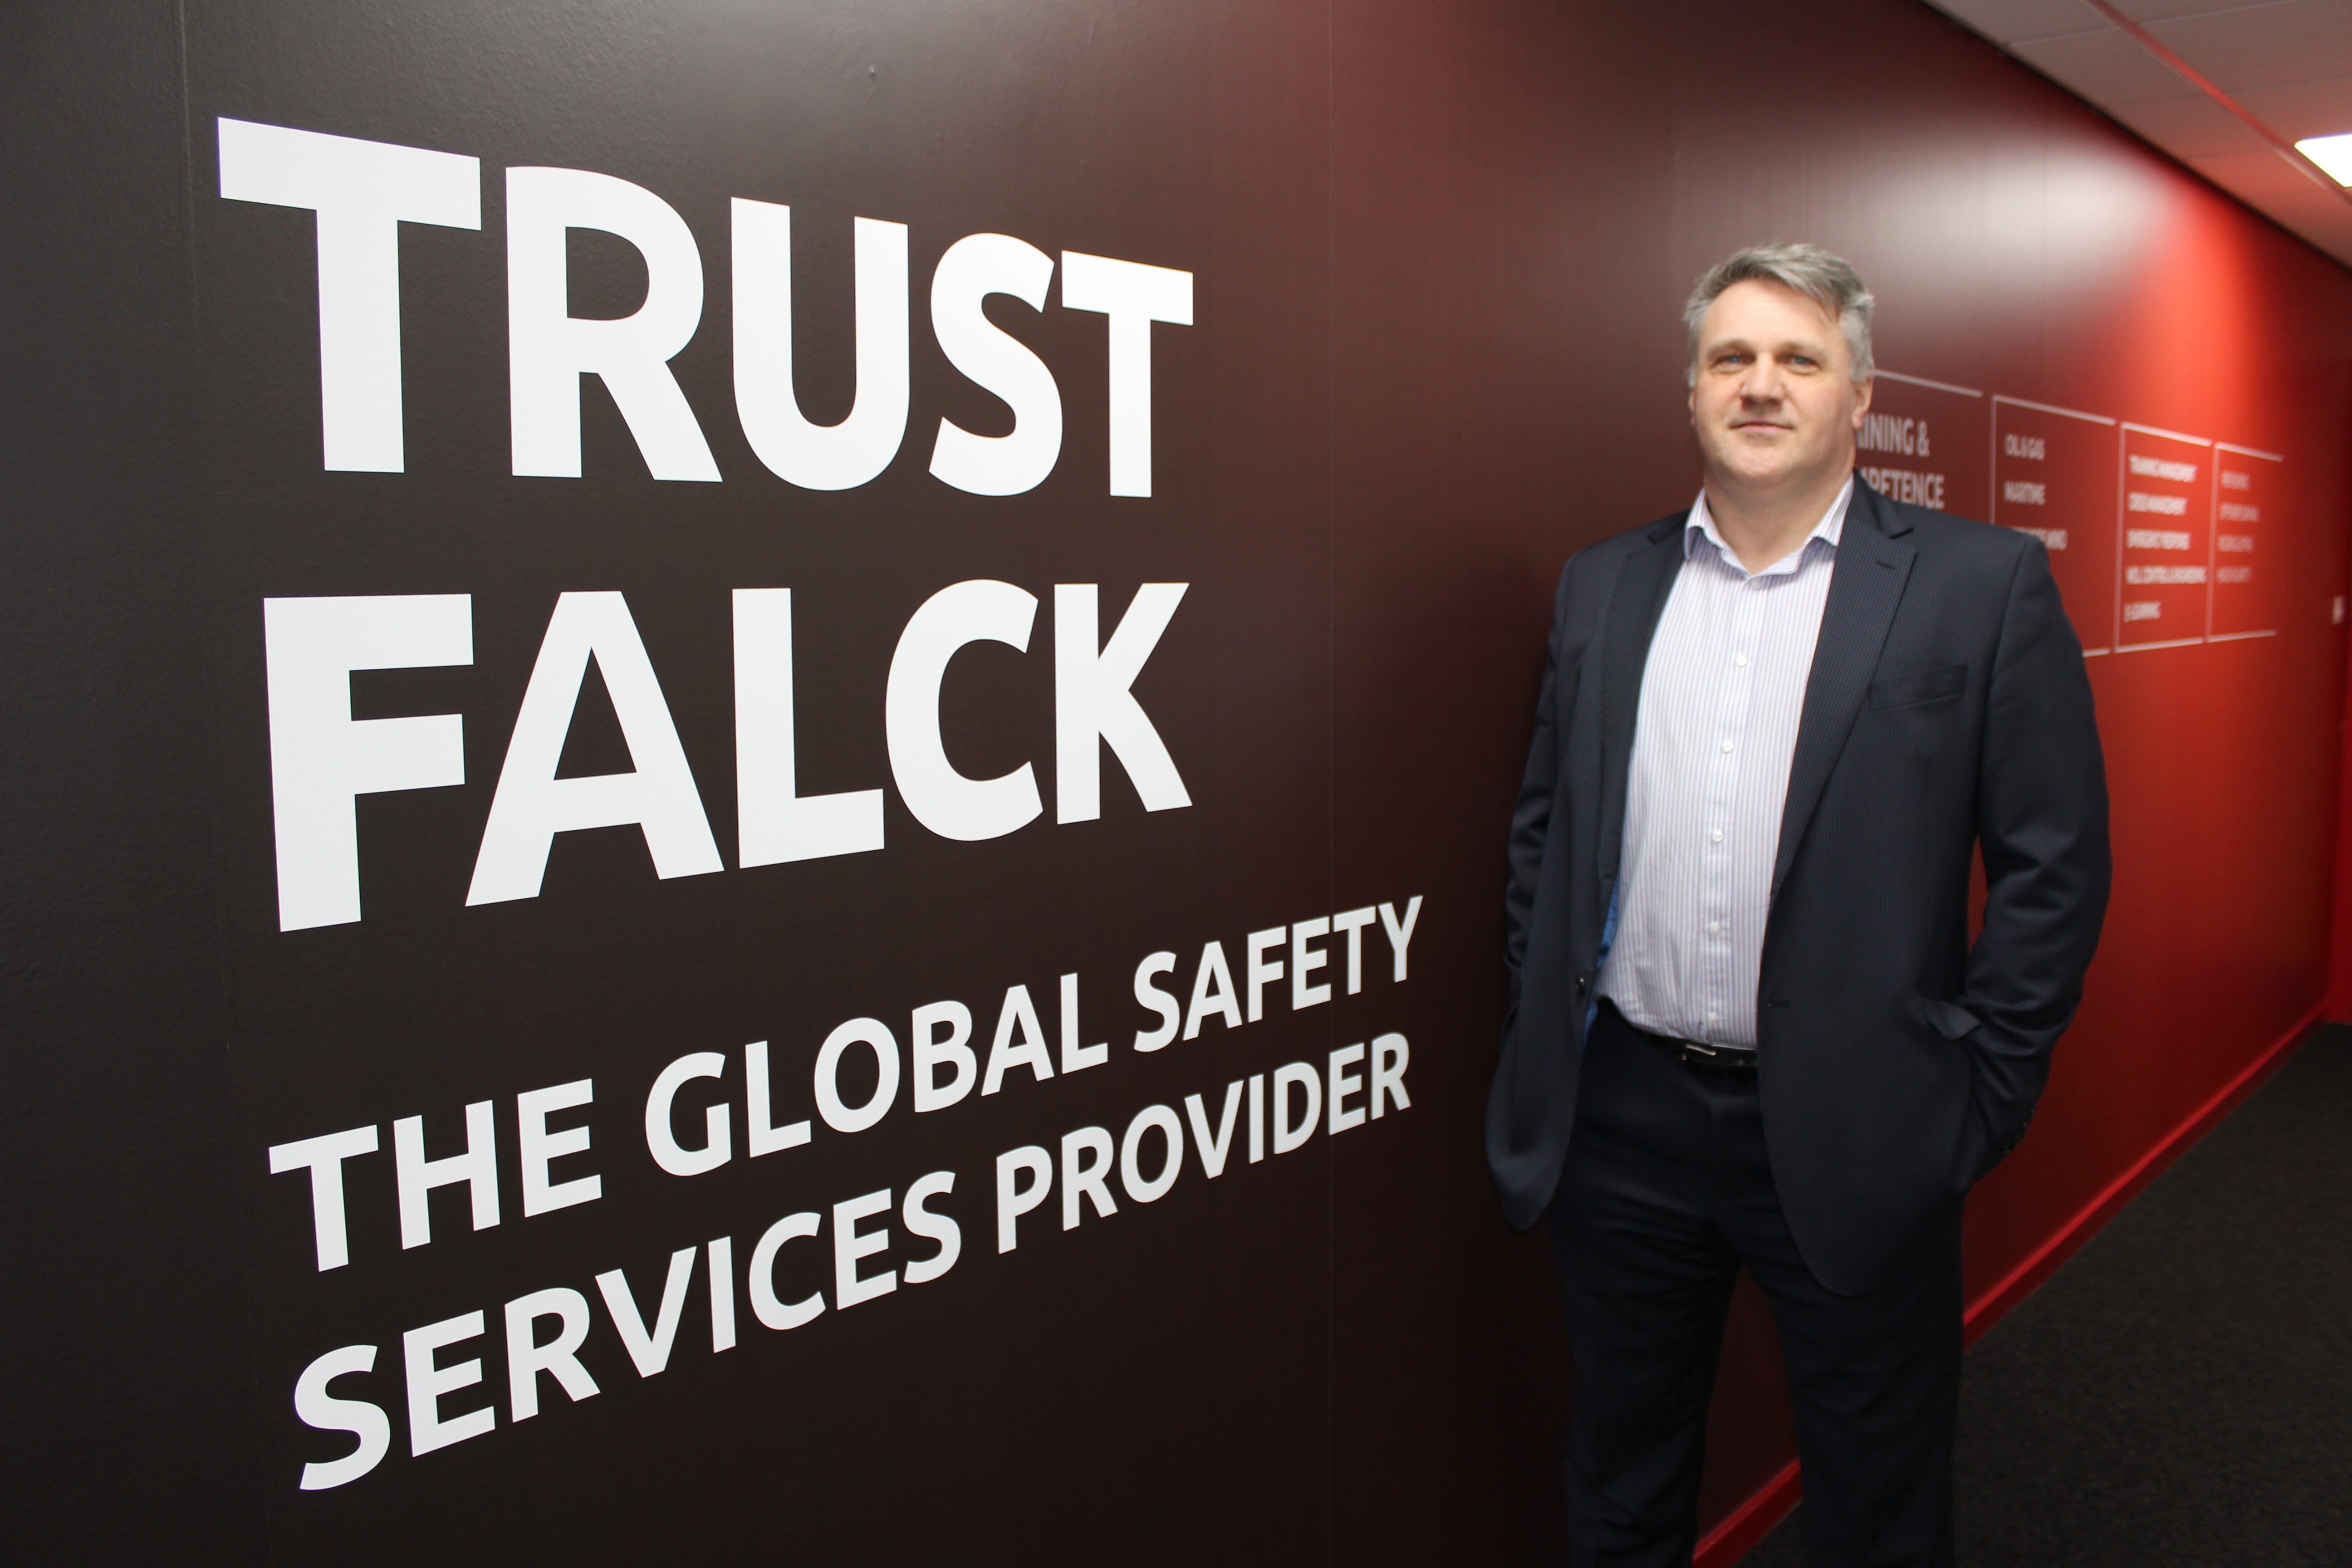 Duncan Bonner, managing director, Falck Safety Services UK